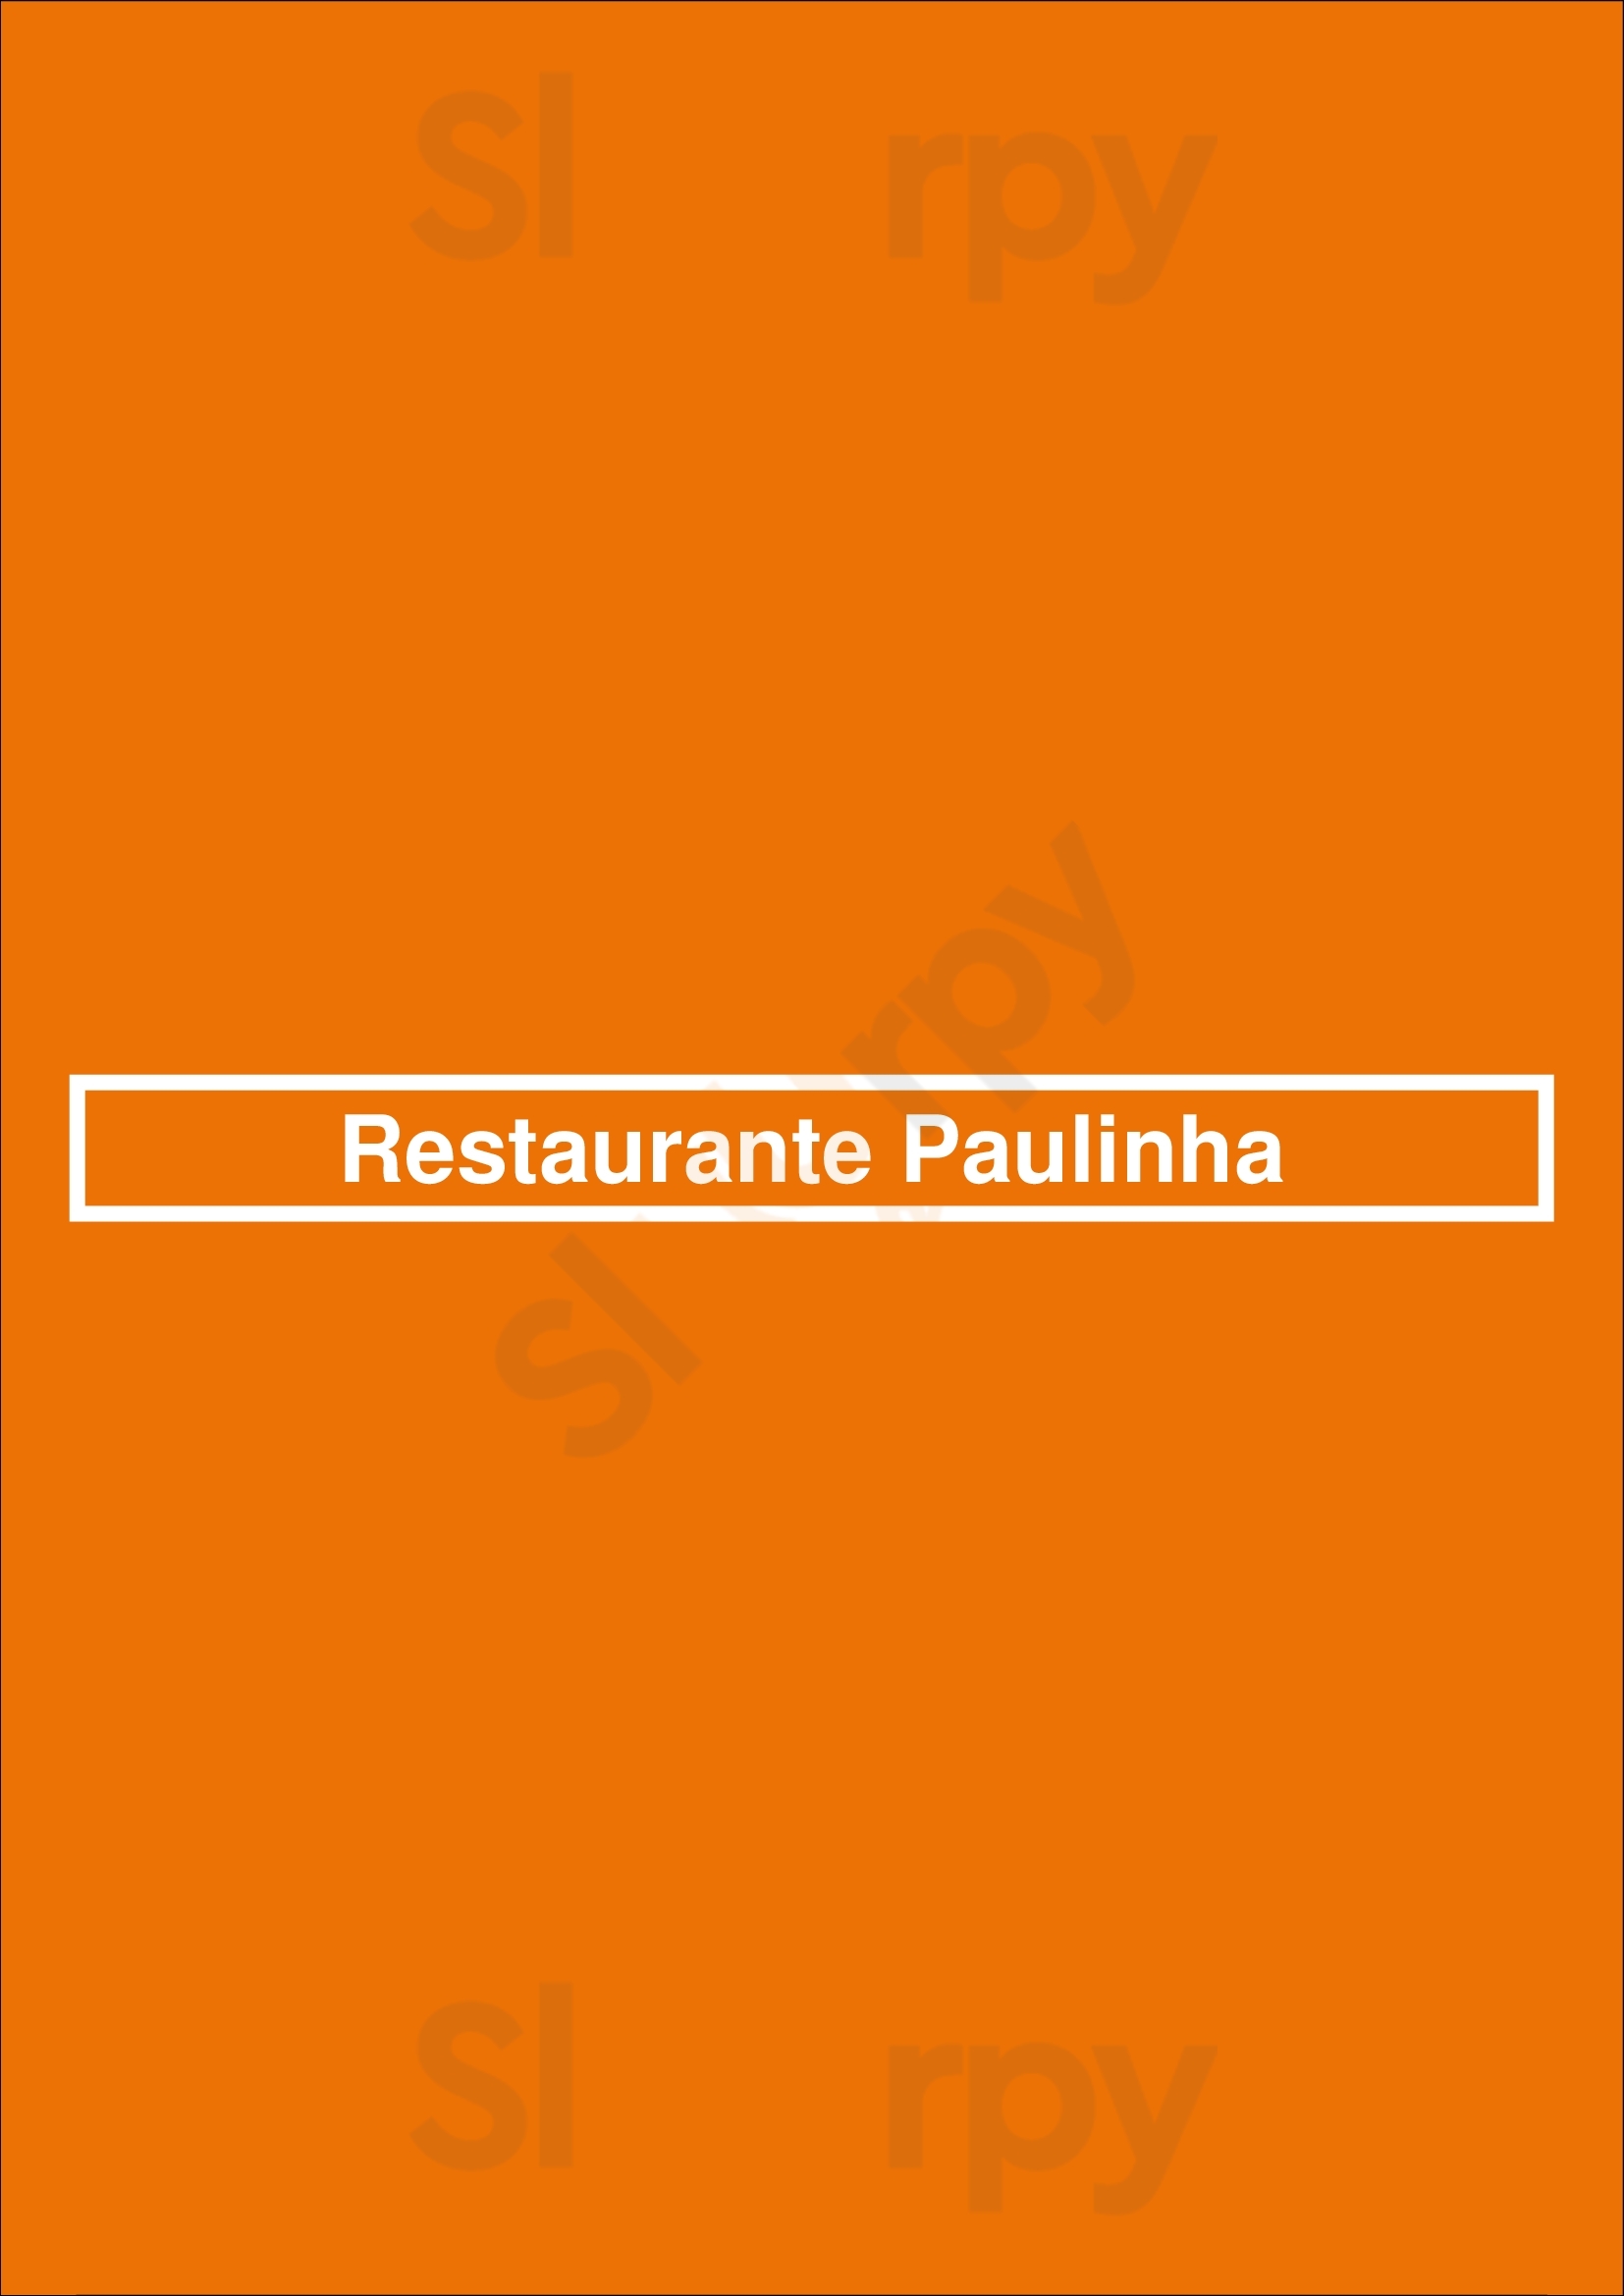 Restaurante Paulinha Cascais Menu - 1